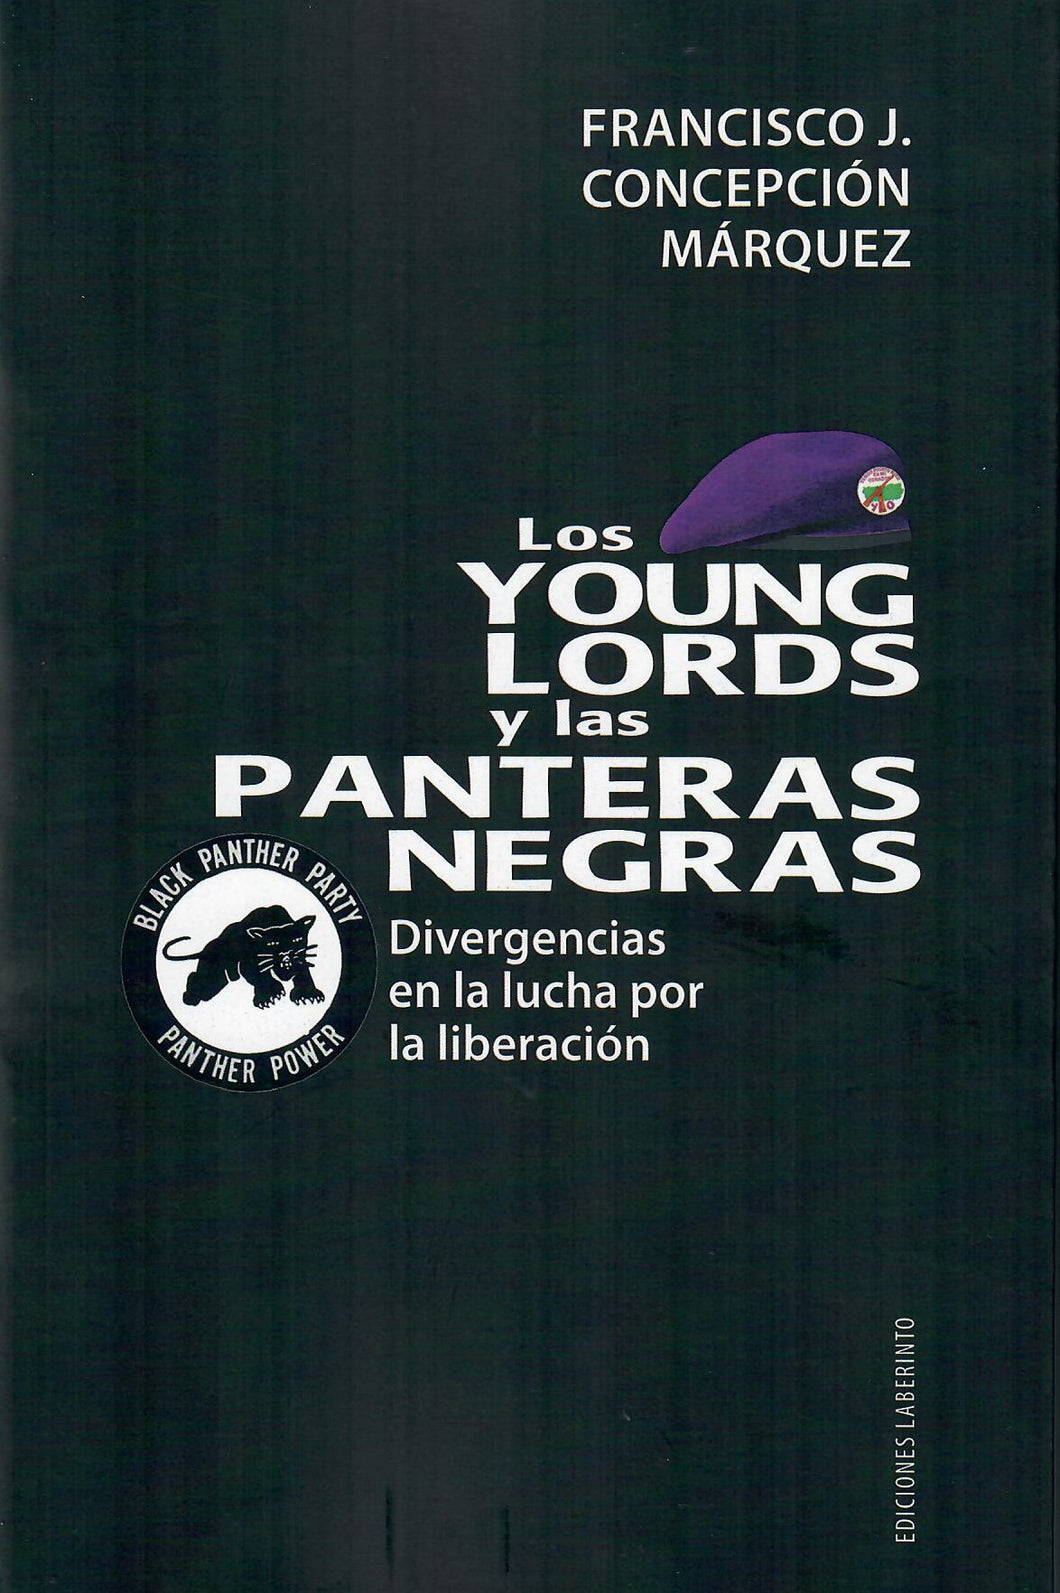 LOS YOUNG LORDS Y LAS PANTERAS NEGRAS - Francisco J. Concepción Márquez